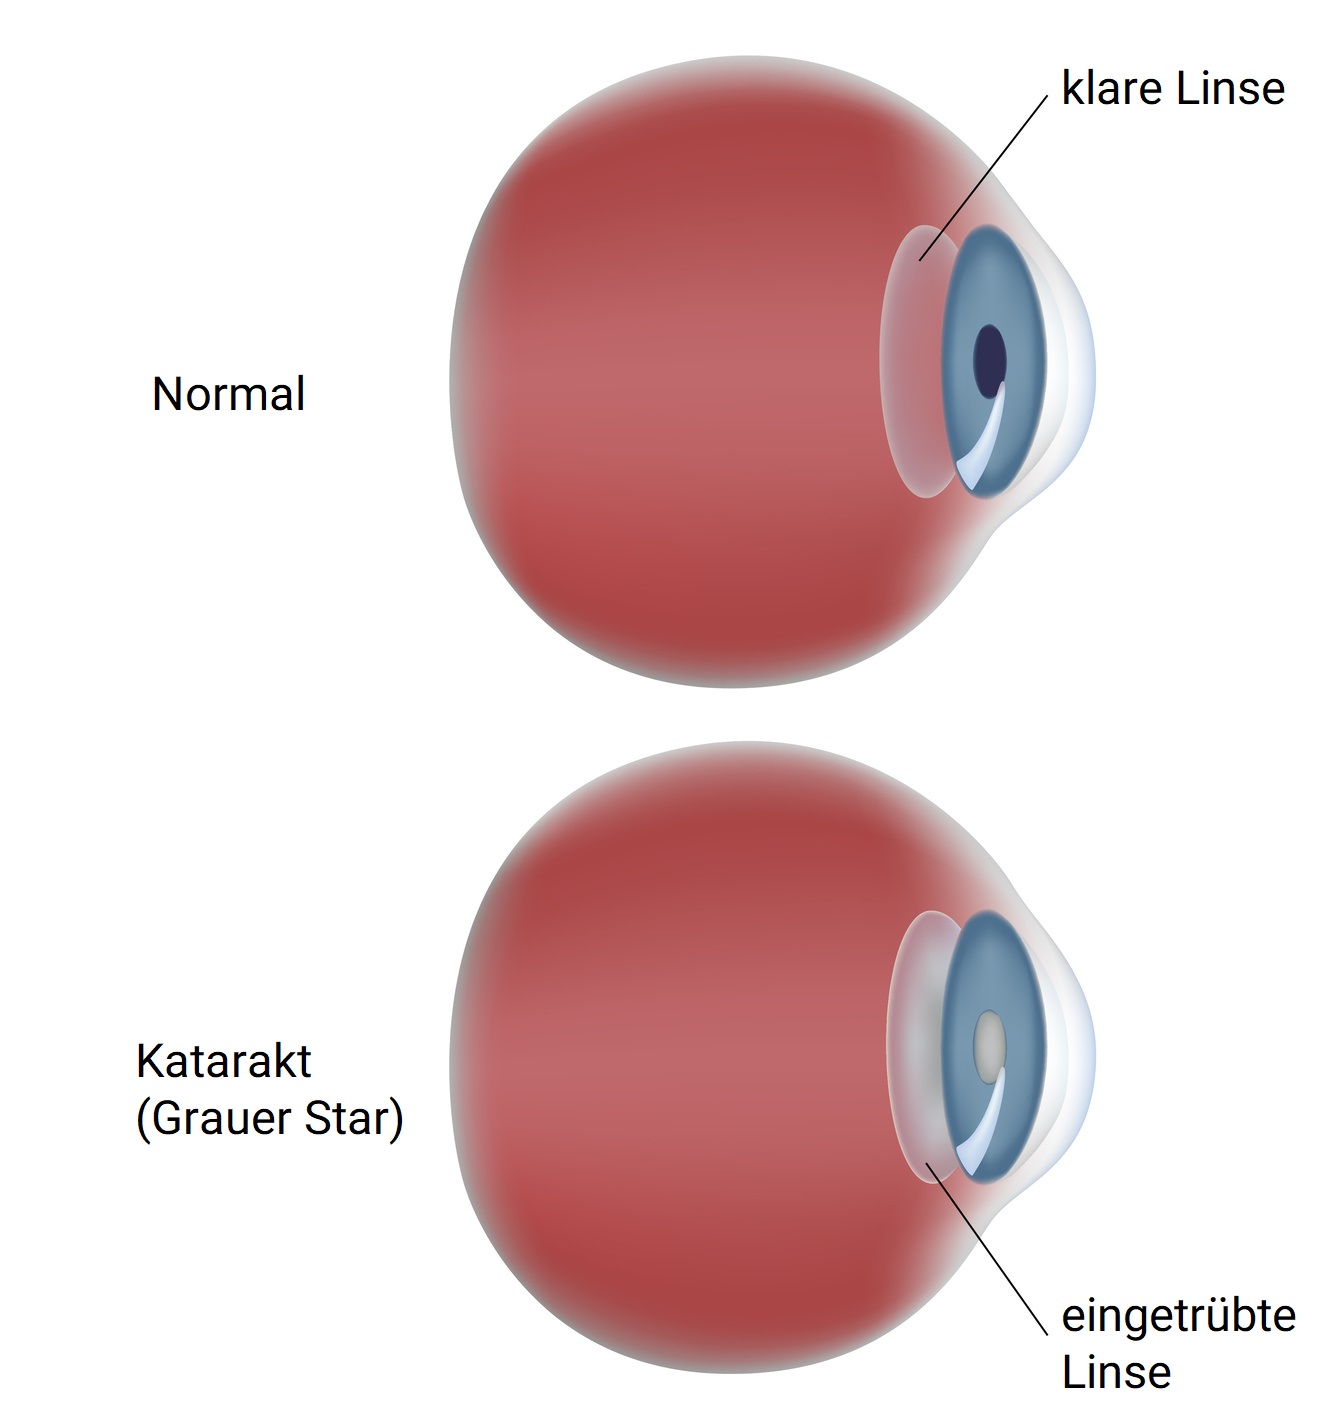 Grauer Star: Ursachen, Operationsmöglichkeit und passende Linsen für die  Augenkrankheit im Alter